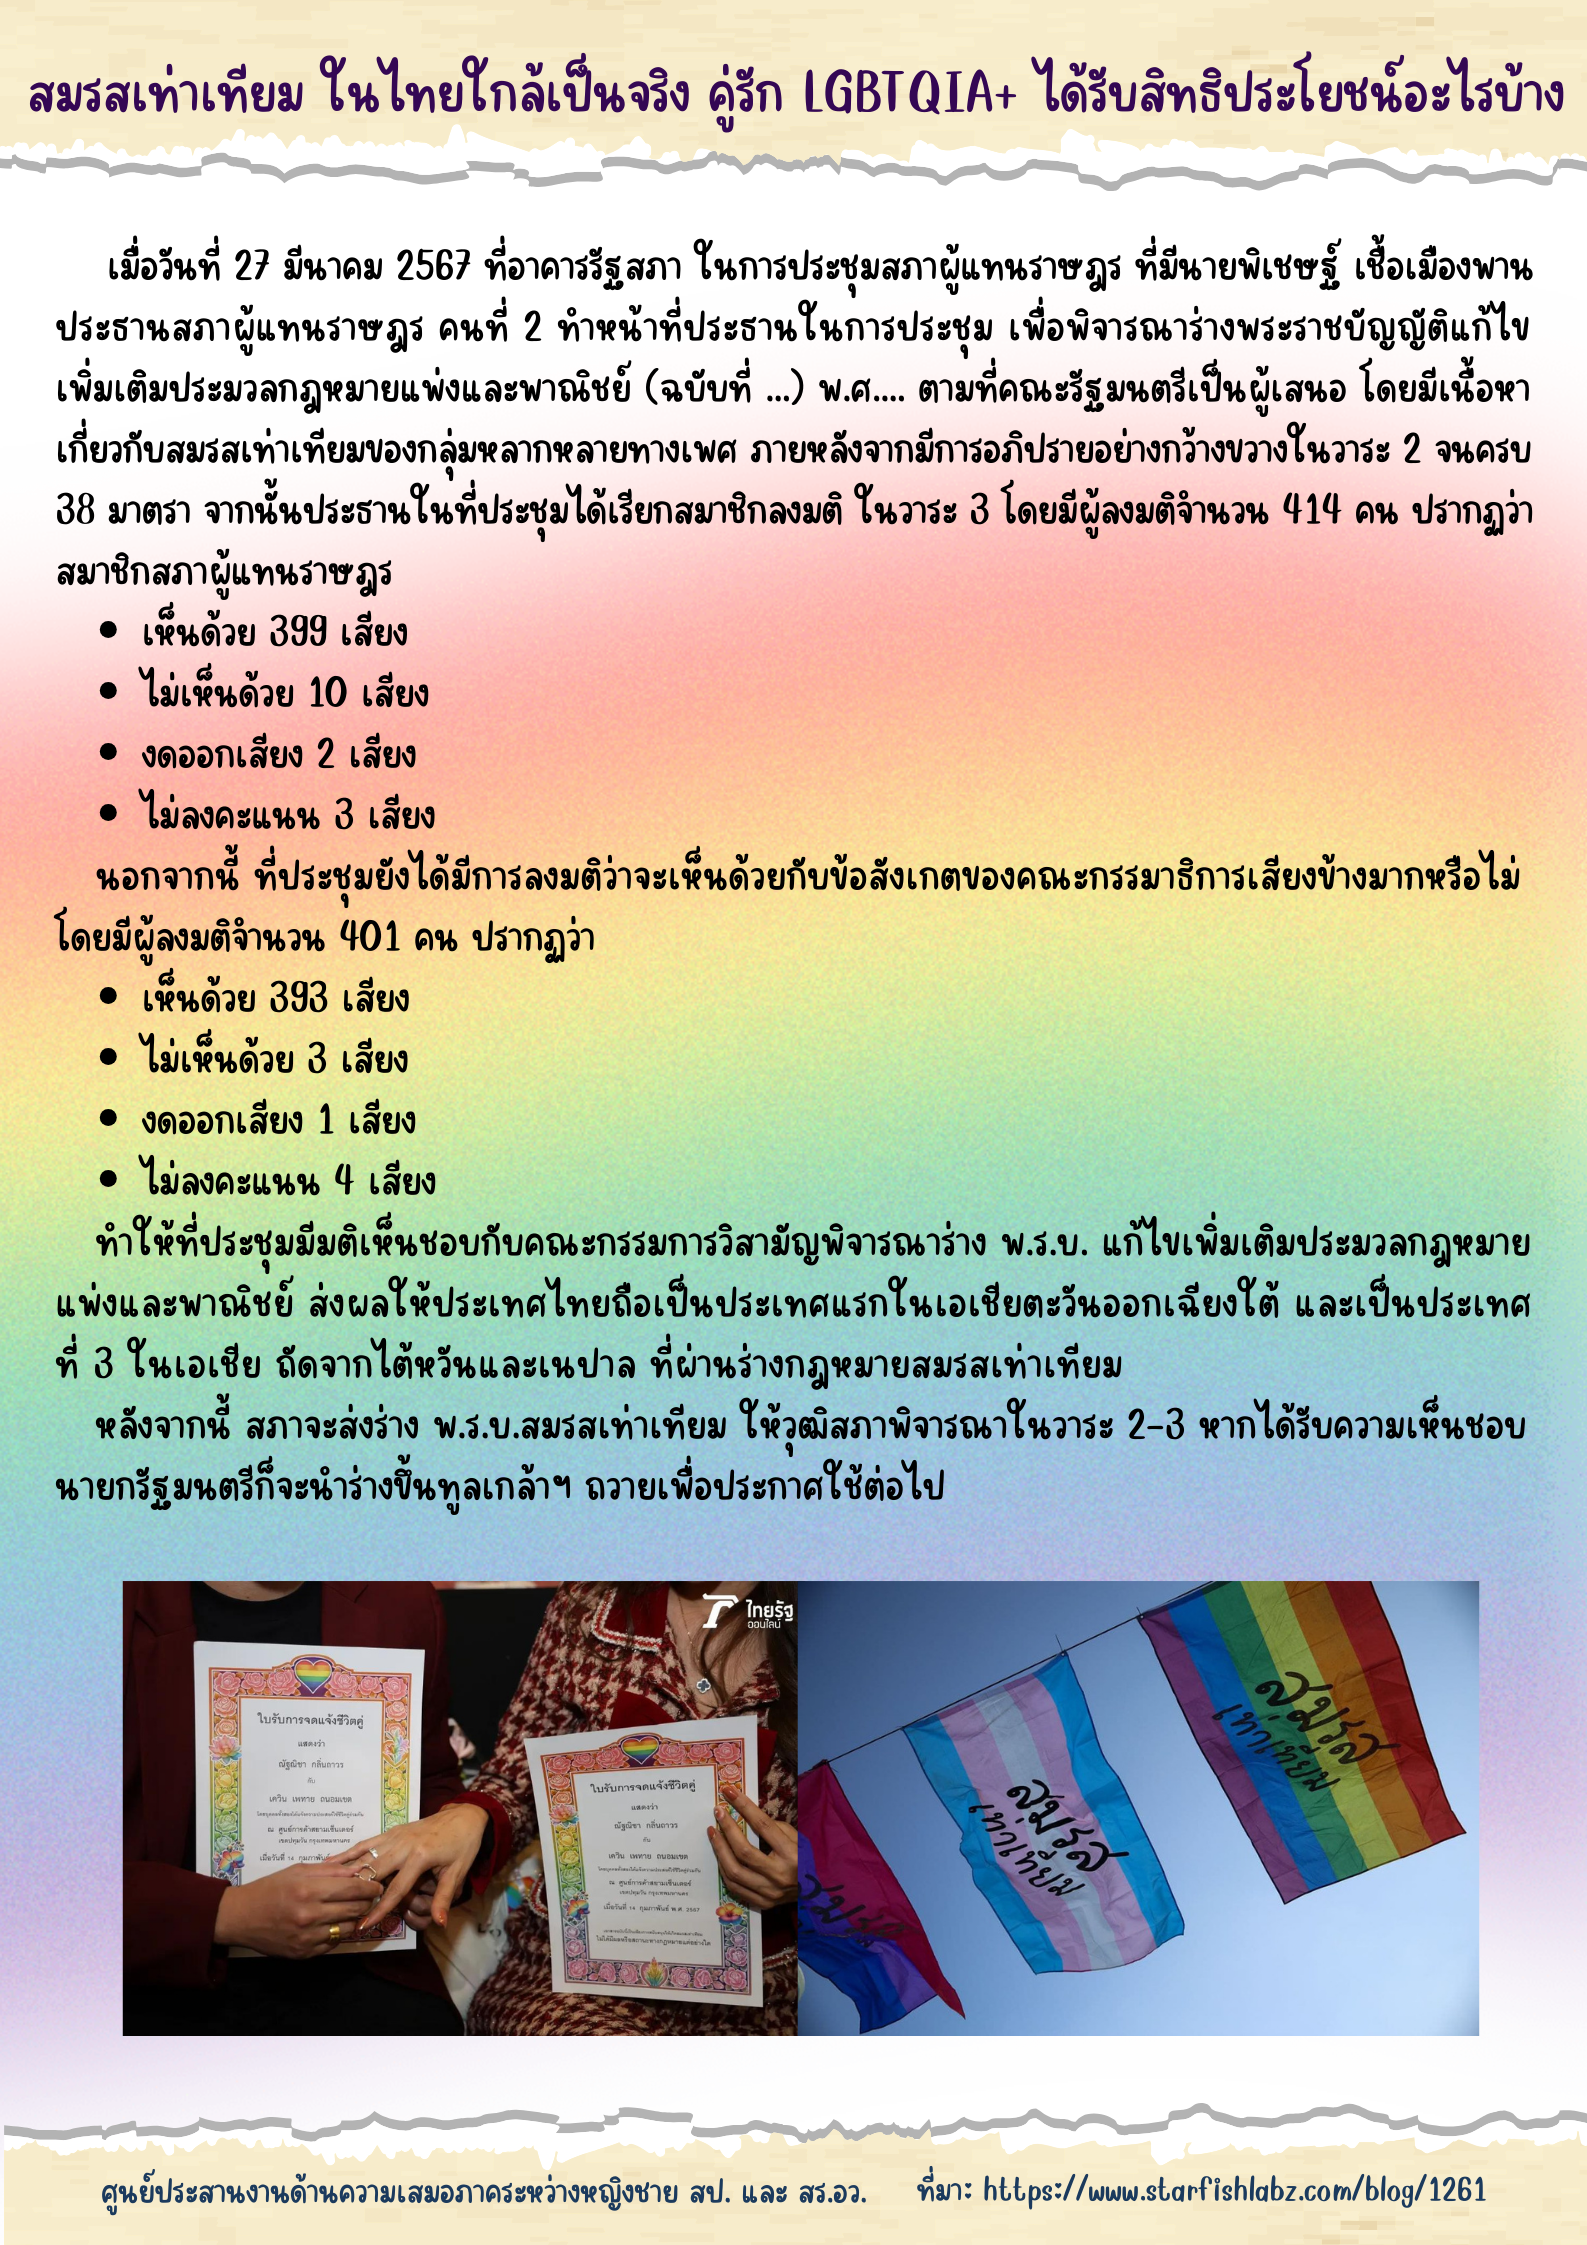 2 สมรสเท่าเทียม ในไทยใกล้เป็นจริง คู่รัก LGBTQIA ได้รับสิทธิประโยชน์อะไรบ้าง